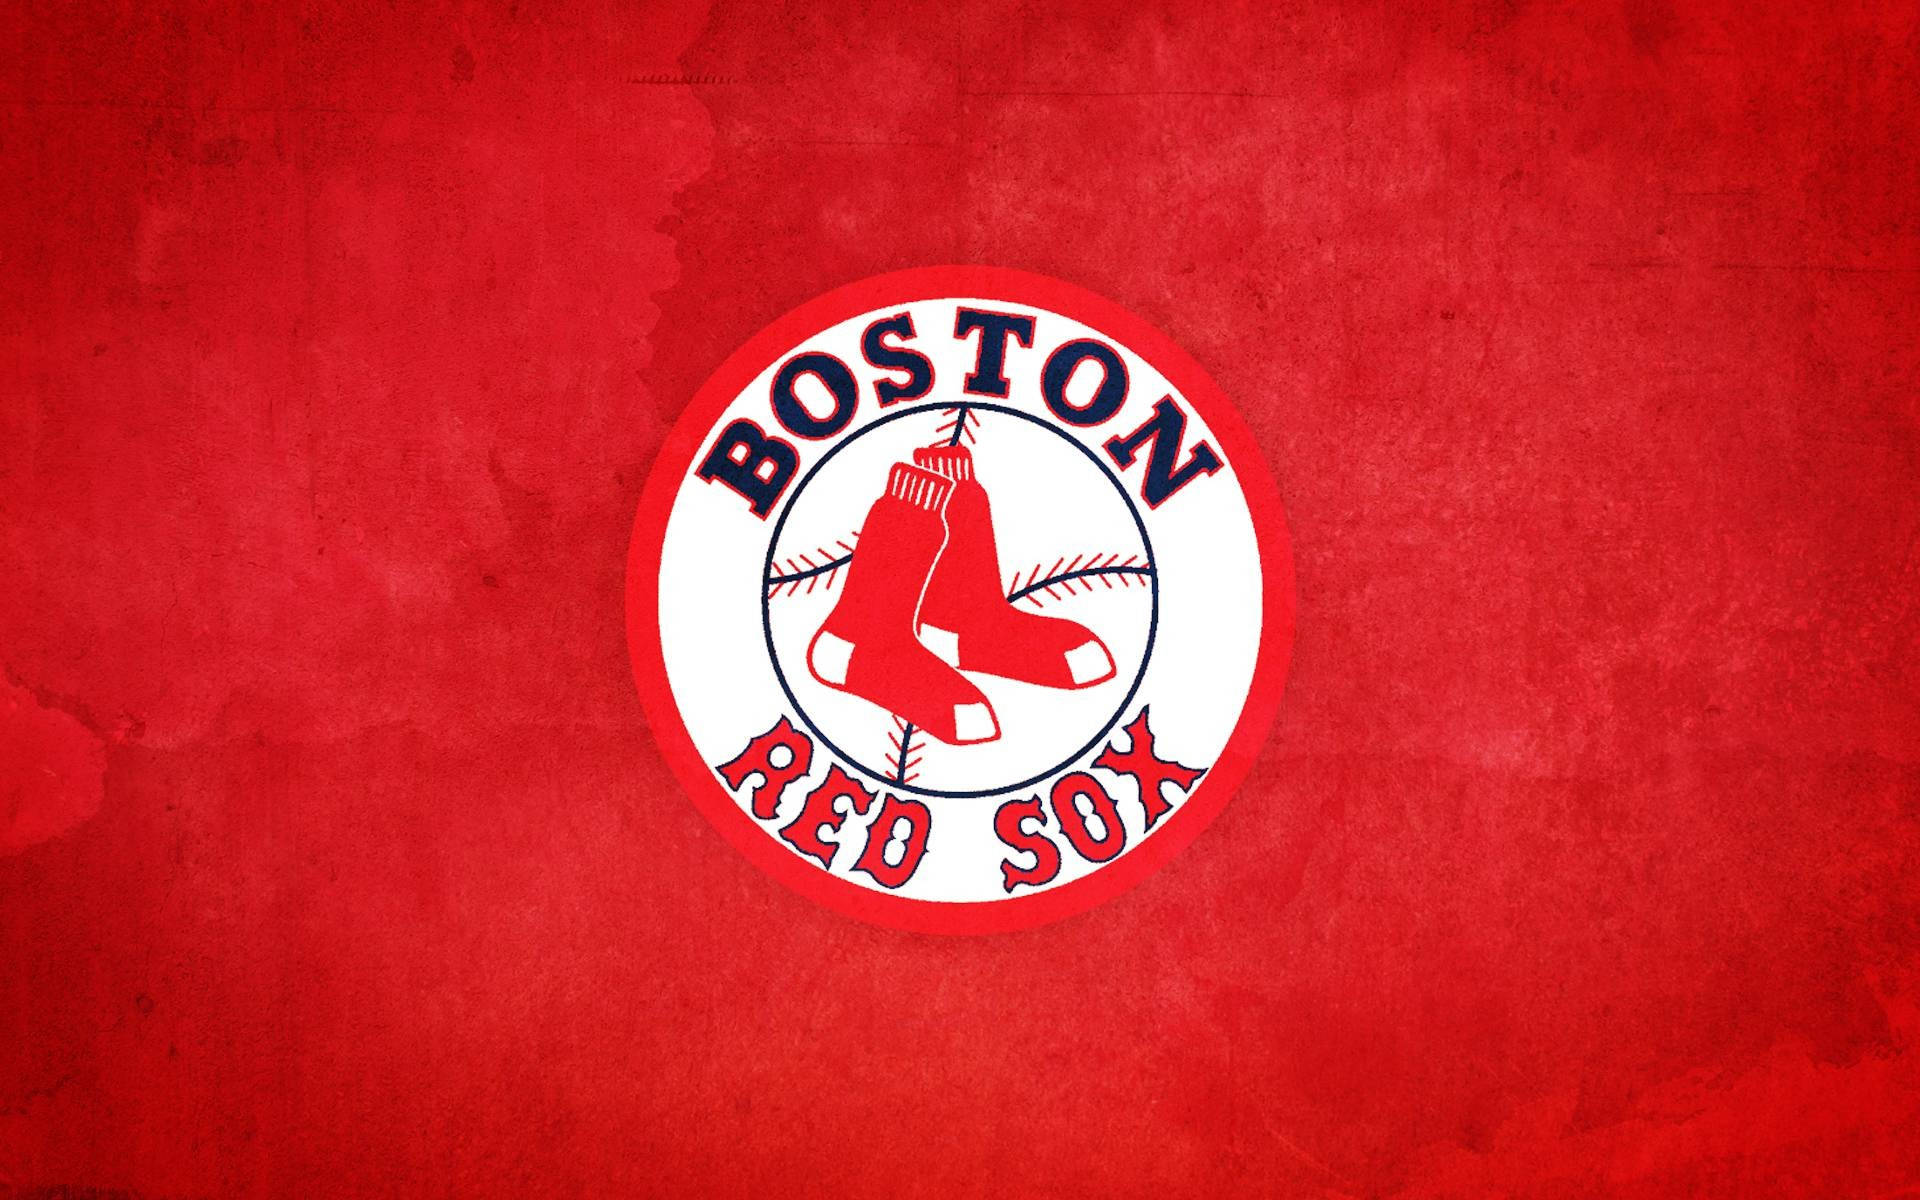 Logo Af Boston Red Sox Wallpaper